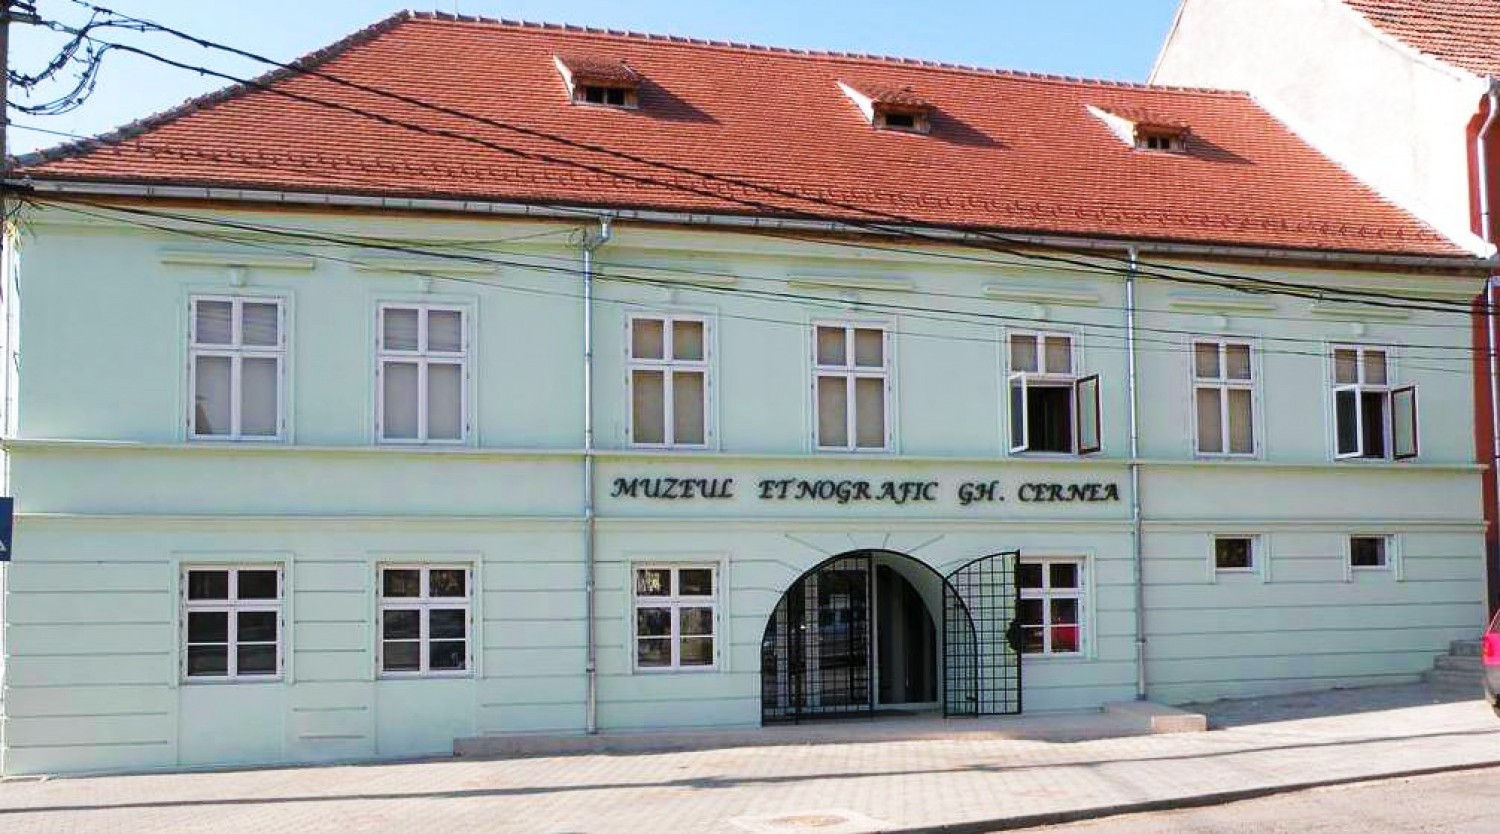 Muzeul de Etnografie Gheorghe Cernea Rupea